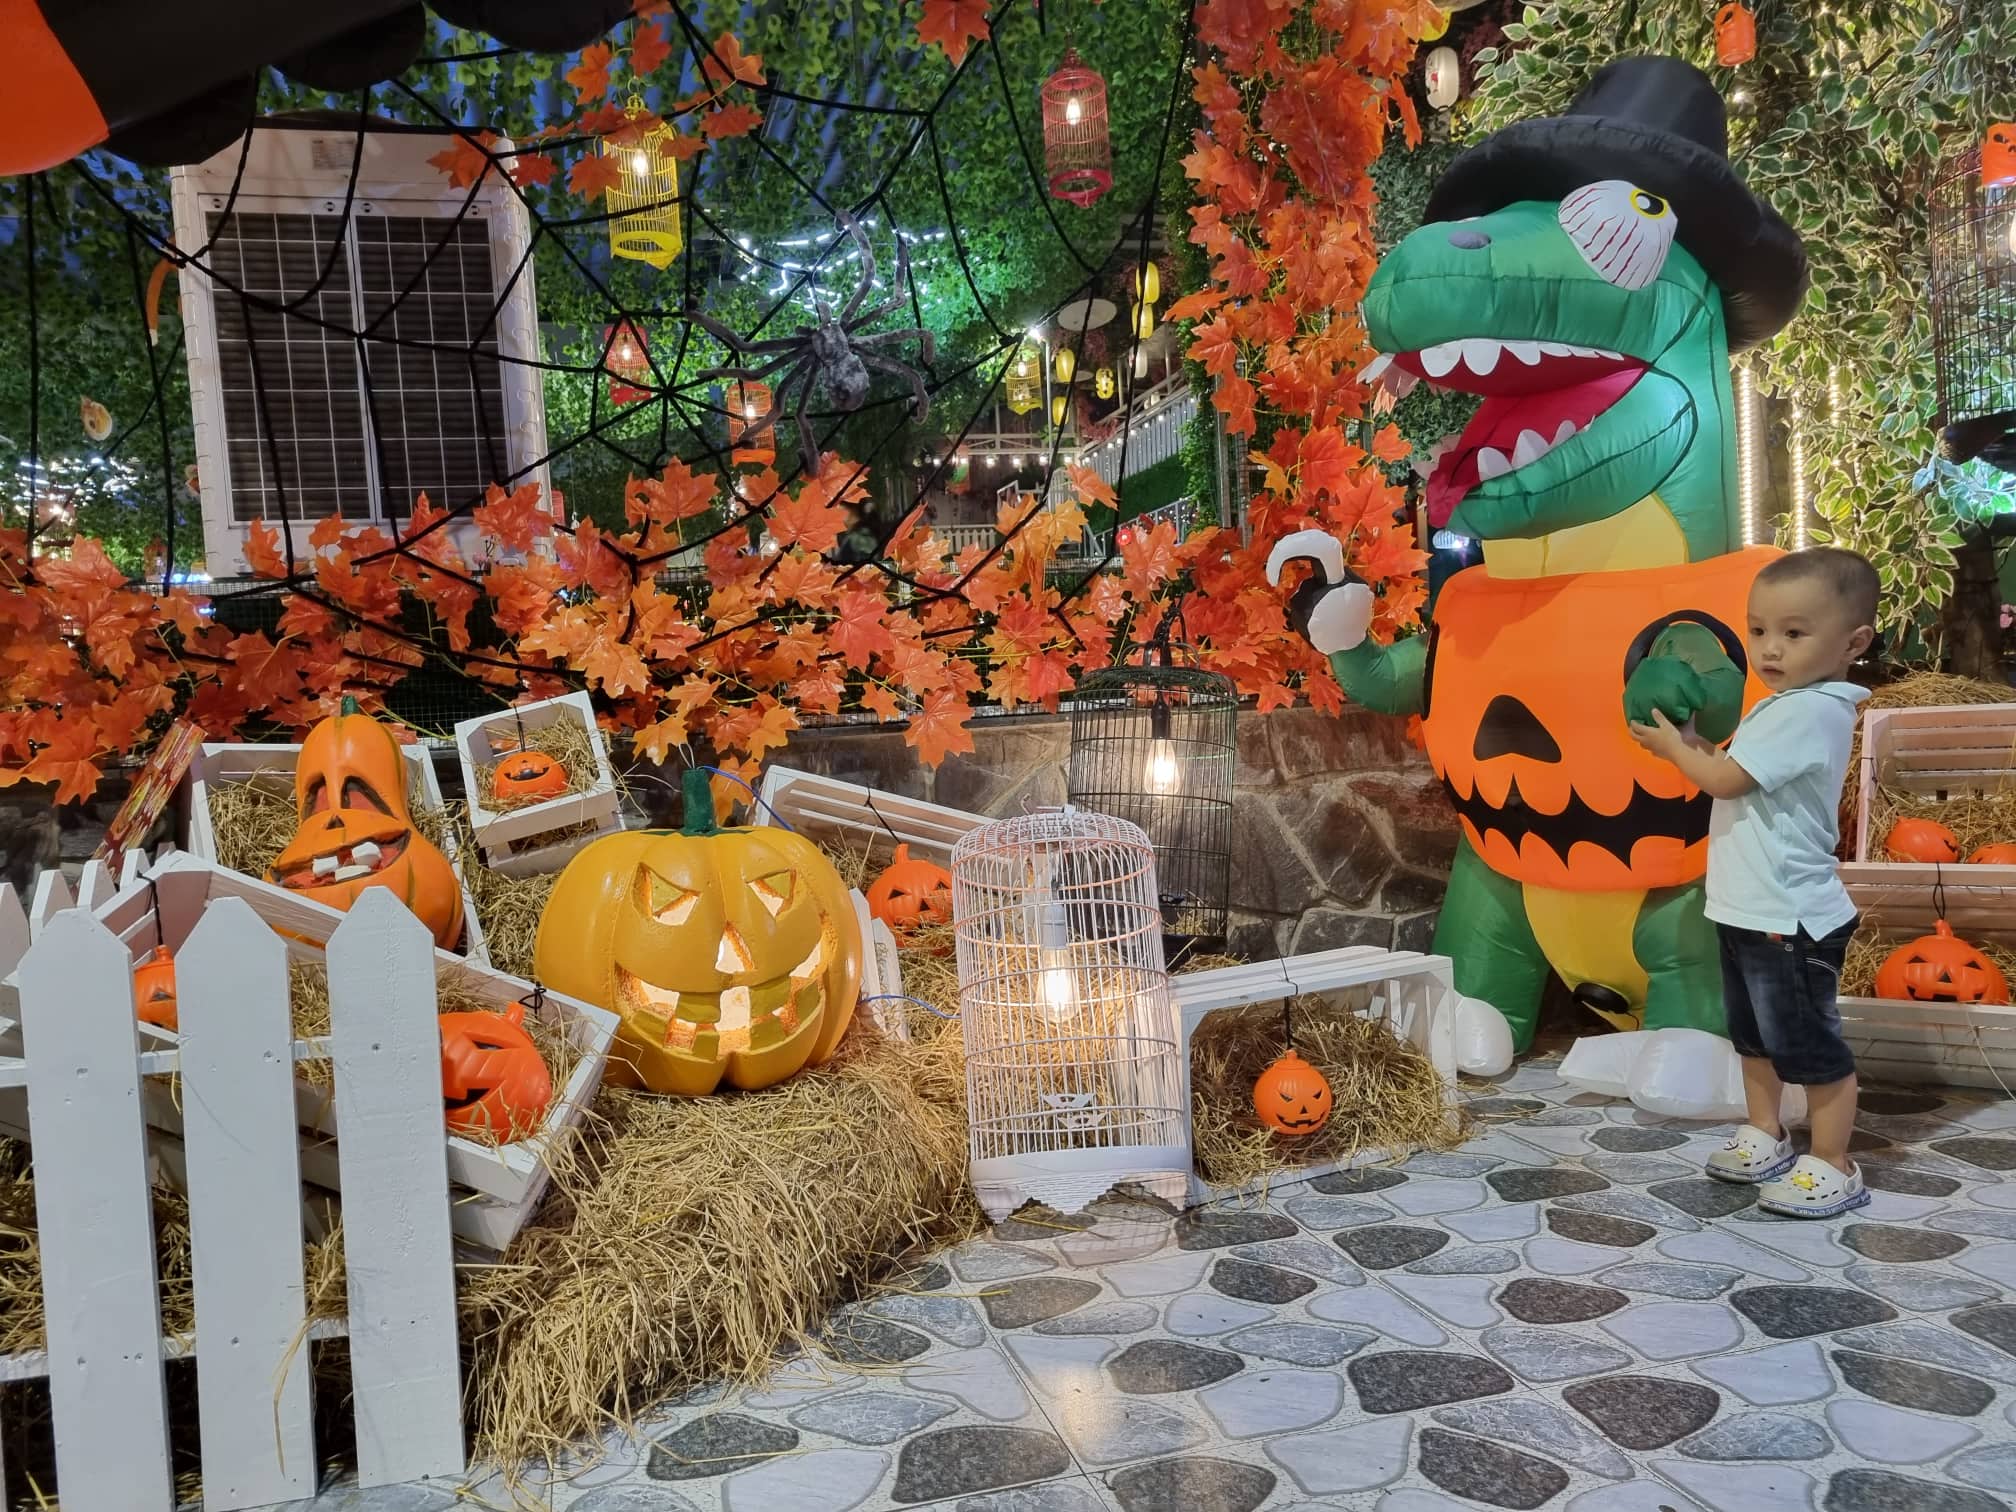 Halloween Hình Nộm Bóng Ma  Ảnh miễn phí trên Pixabay  Pixabay